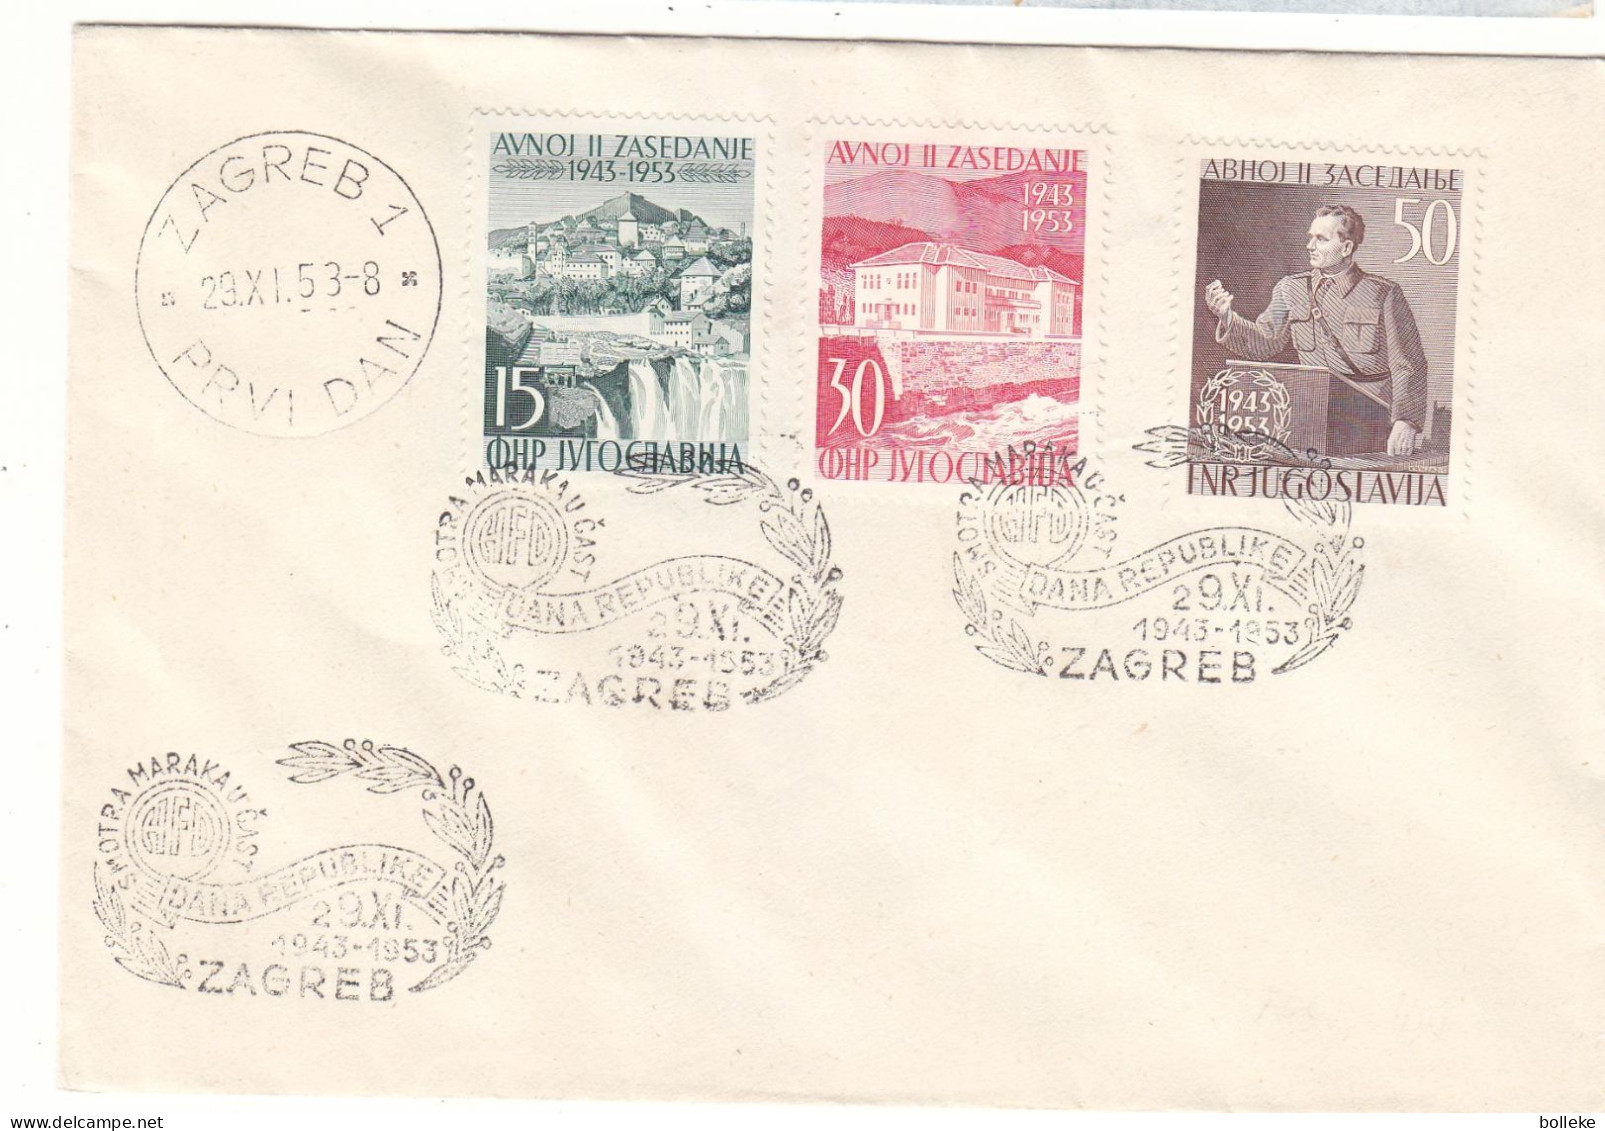 Yougoslavie - Lettre De 1953 - Oblit Zagreb - Tito - Chutes D'eaux - Valeur 60,00 Euros - Briefe U. Dokumente